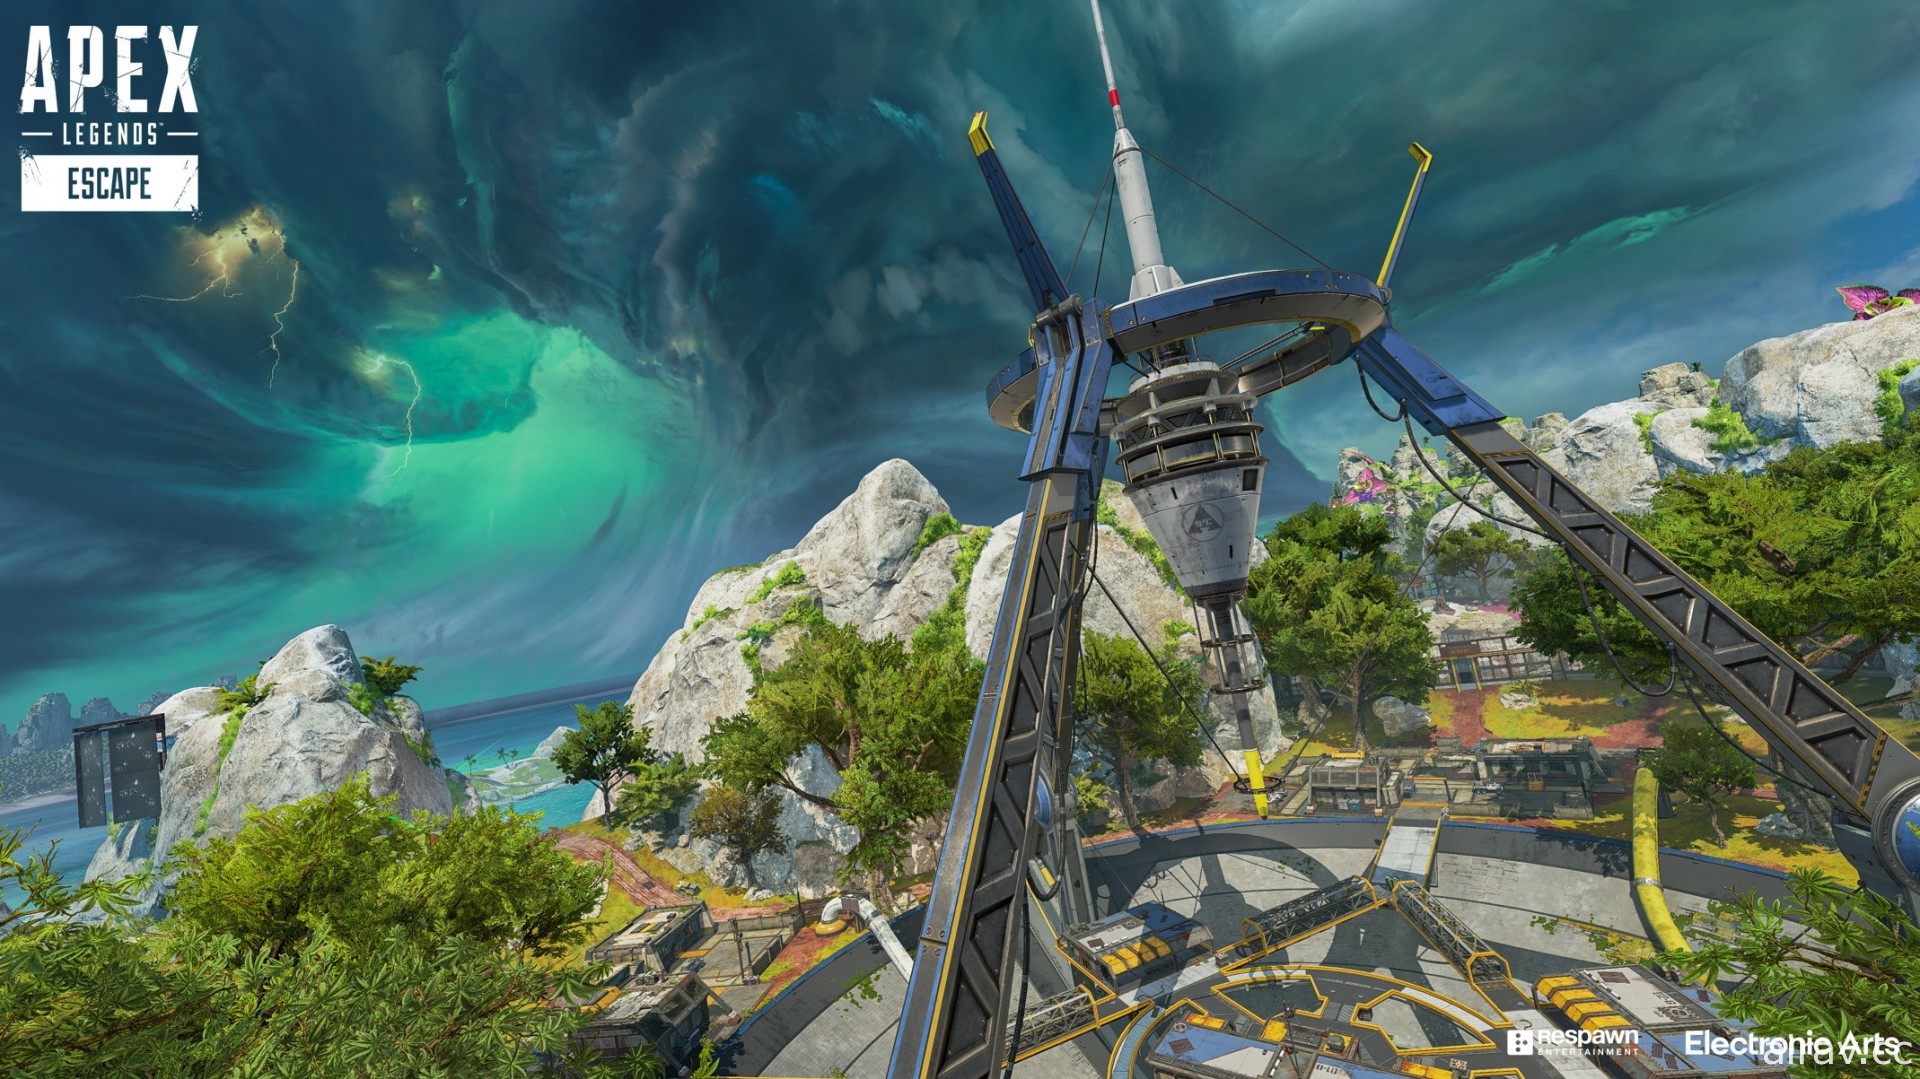 《APEX 英雄》开发团队谈新赛季《逃脱隐世》设计理念 玩家将探索更多艾许的故事